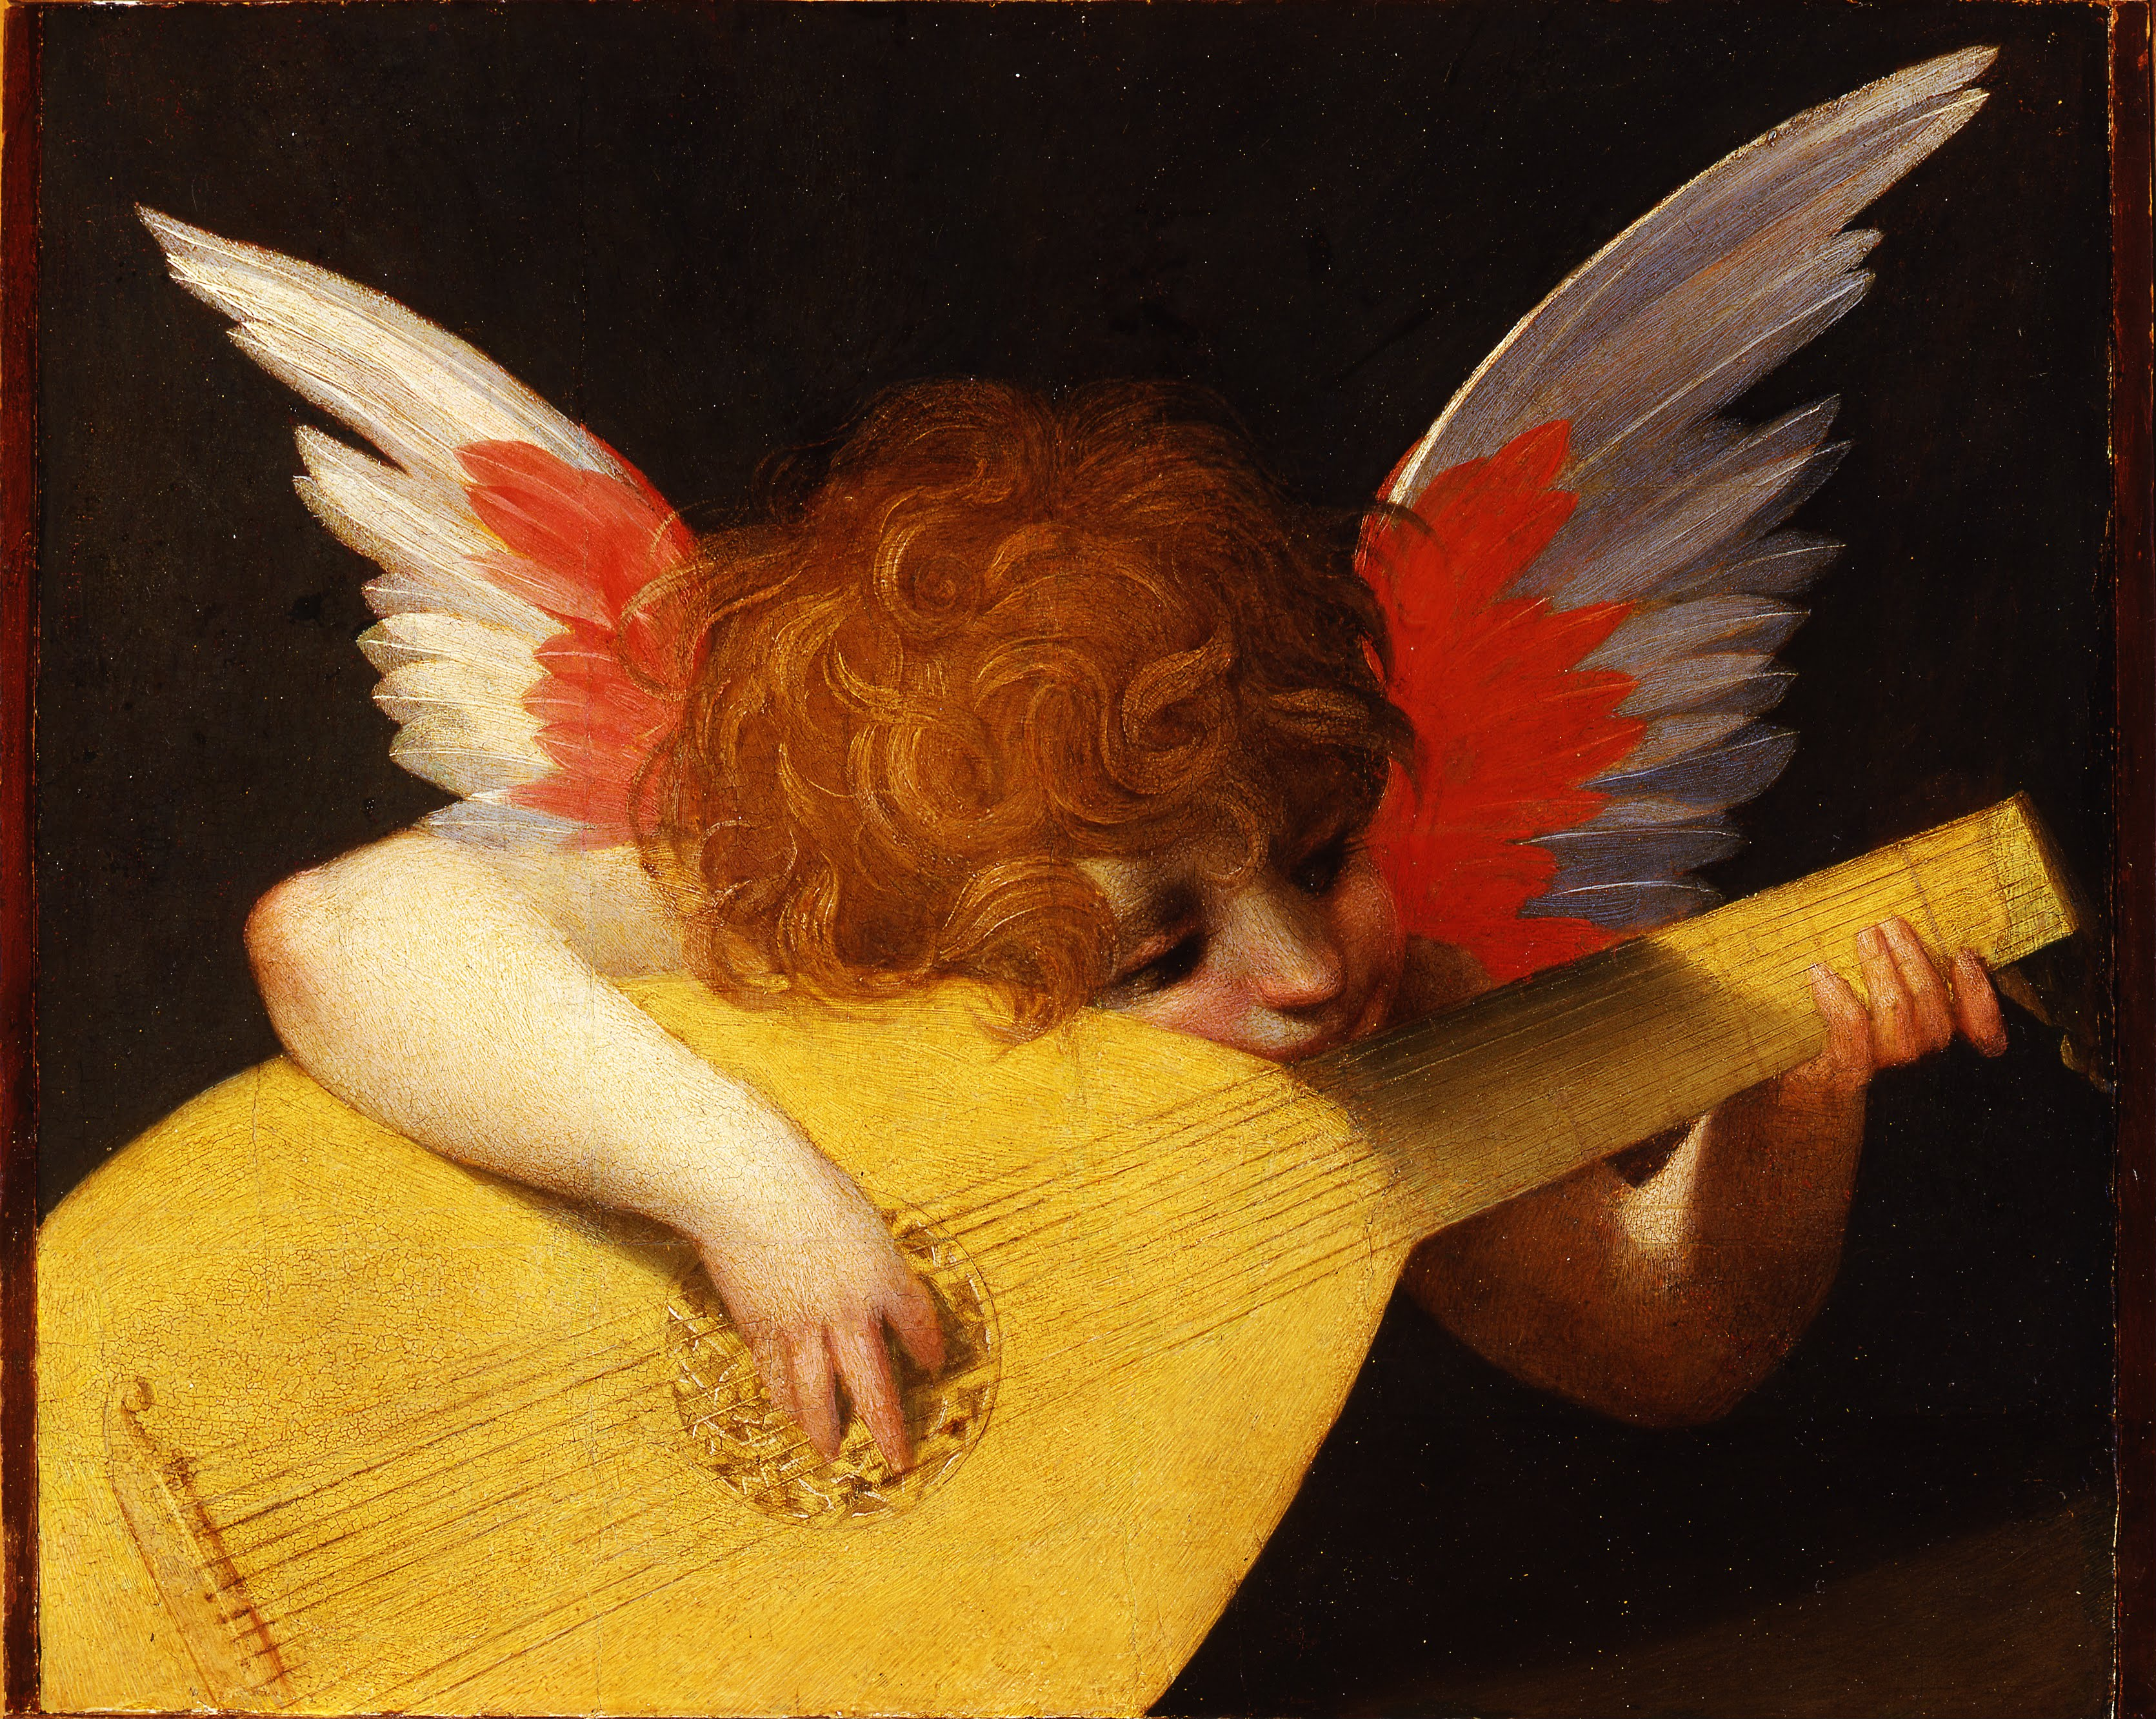 Musical Angel by Rosso Fiorentino - around 1522 - 141 x 172 cm Galleria degli Uffizi